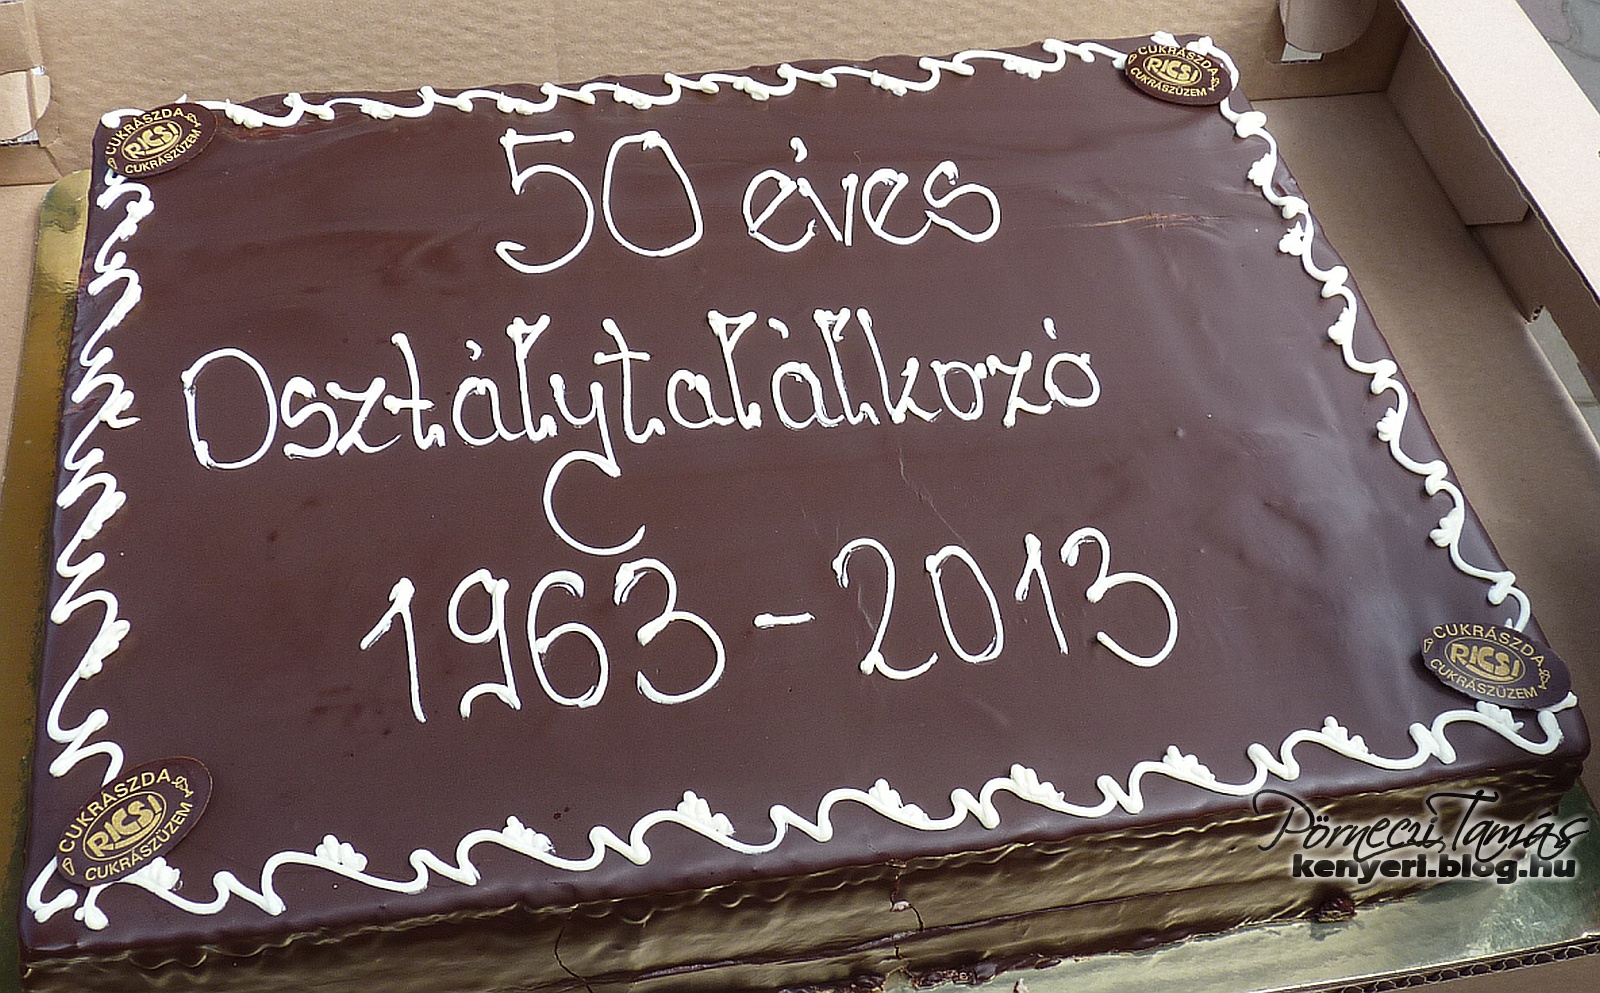 Az 50 éves találkozóra készült egyedi torta 2013-ban (saját fotóm)